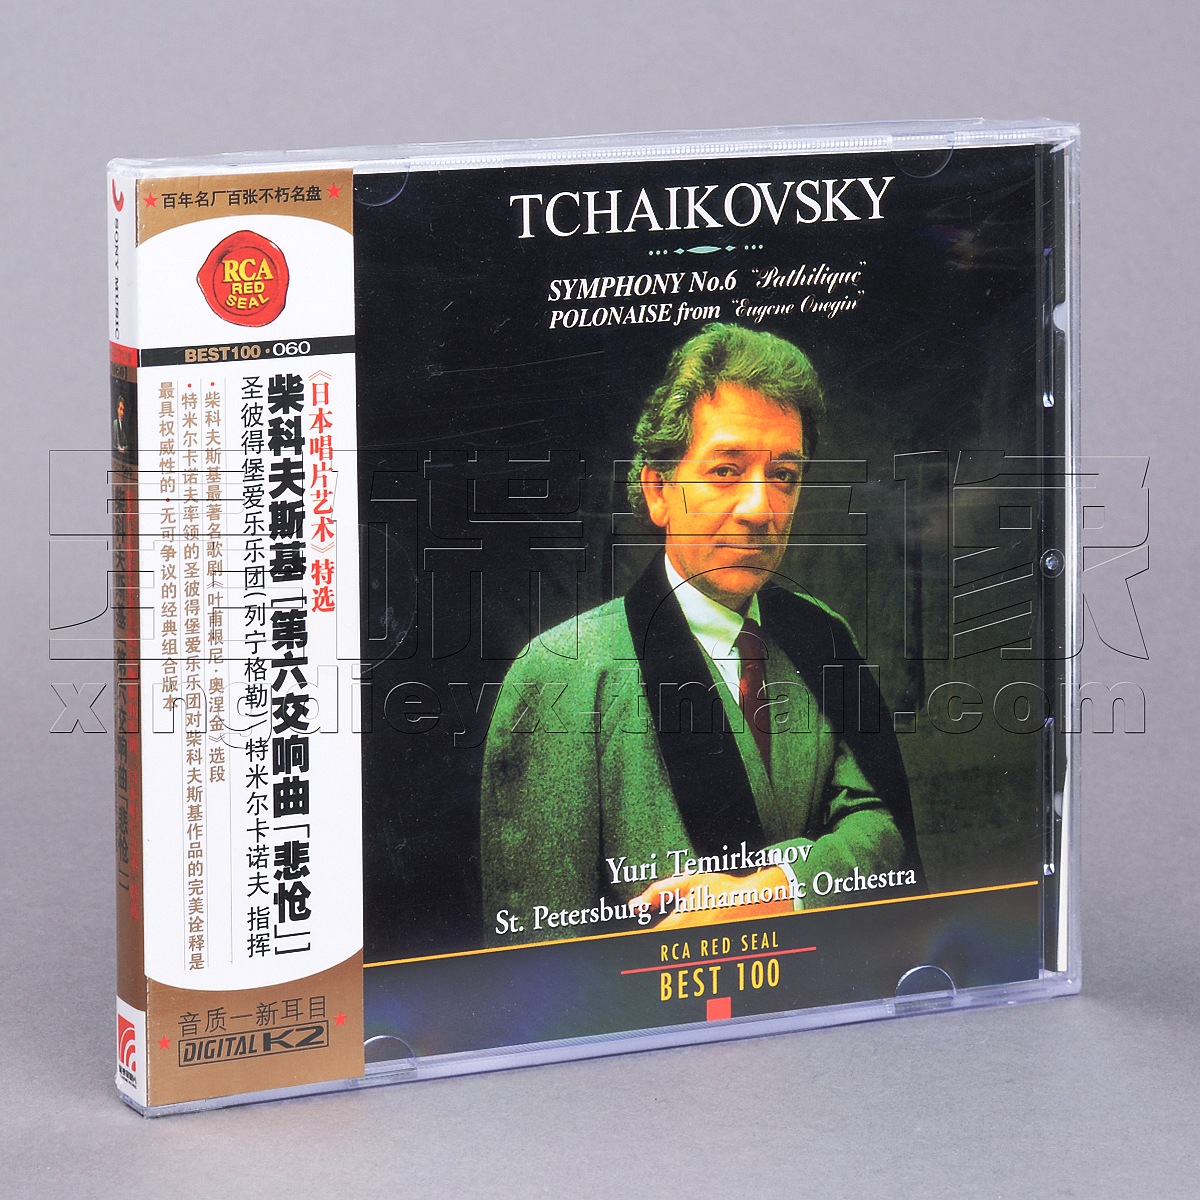 正版RCA红印鉴 BEST100-060 柴可夫斯基 第六交响曲 悲怆  CD碟片